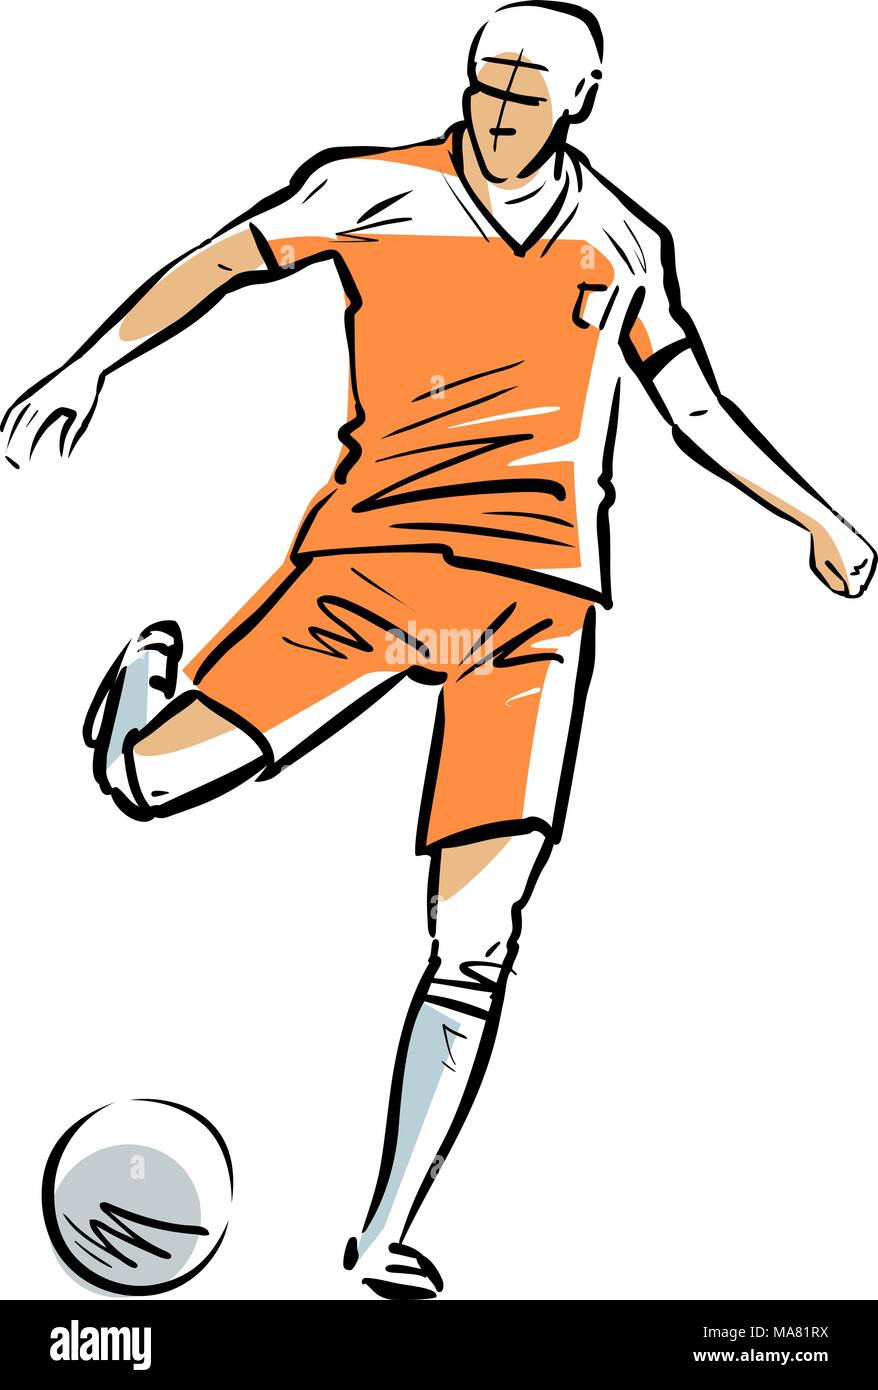 Fußball-Spieler läuft mit dem Ball. Sport Konzept. Skizze Vector Illustration Stock Vektor